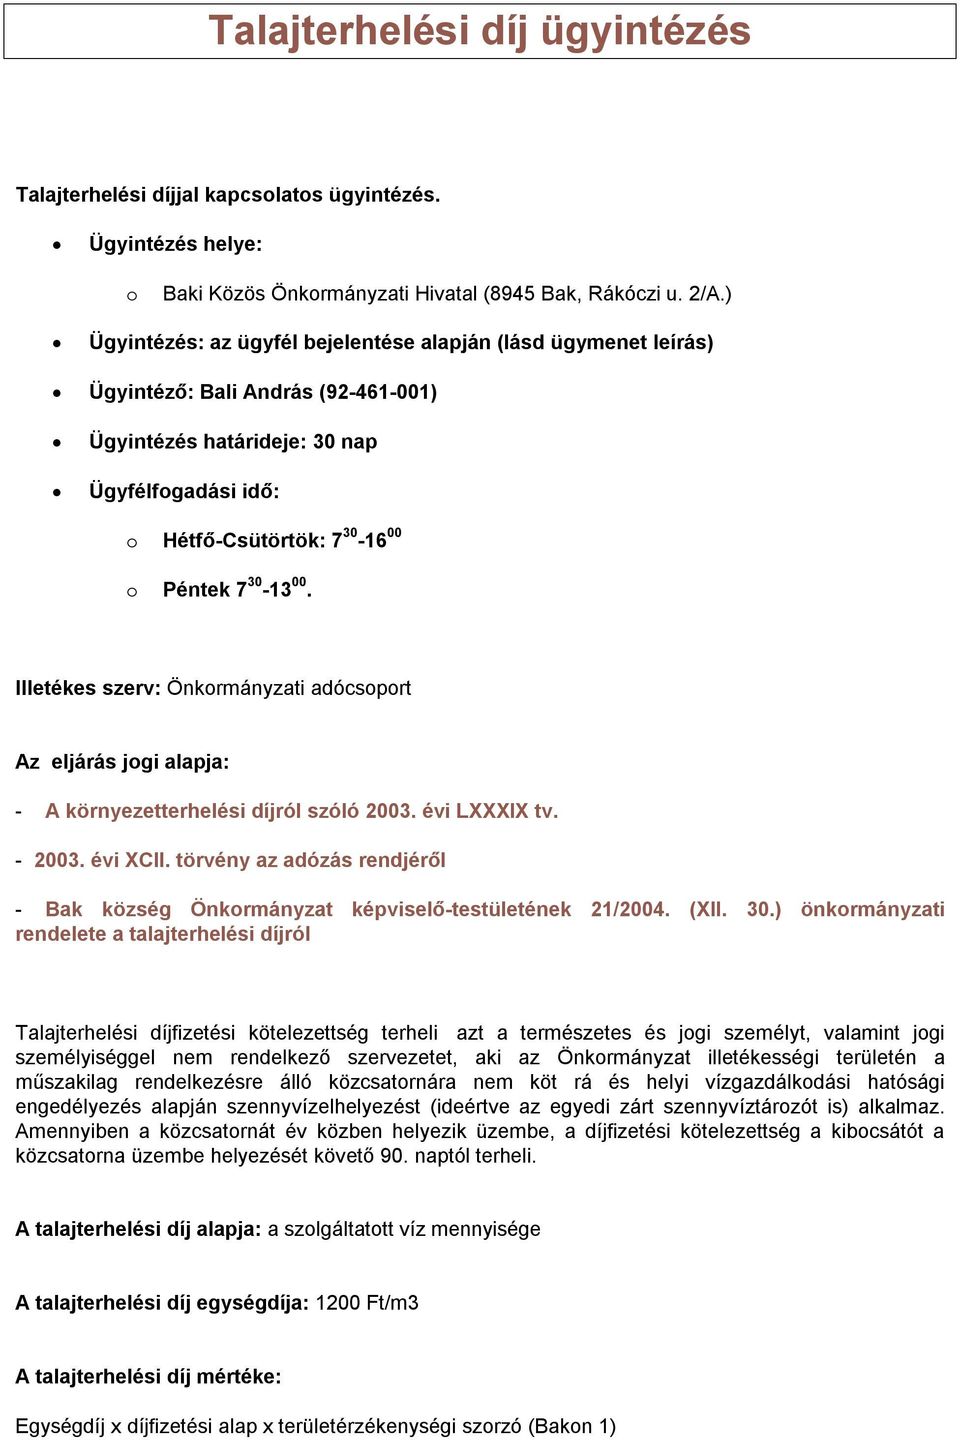 környezetterhelési díjról szóló 2003. évi LXXXIX tv. - 2003. évi XCII. törvény az adózás rendjéről - Bak község Önkrmányzat képviselő-testületének 21/2004. (XII. 30.